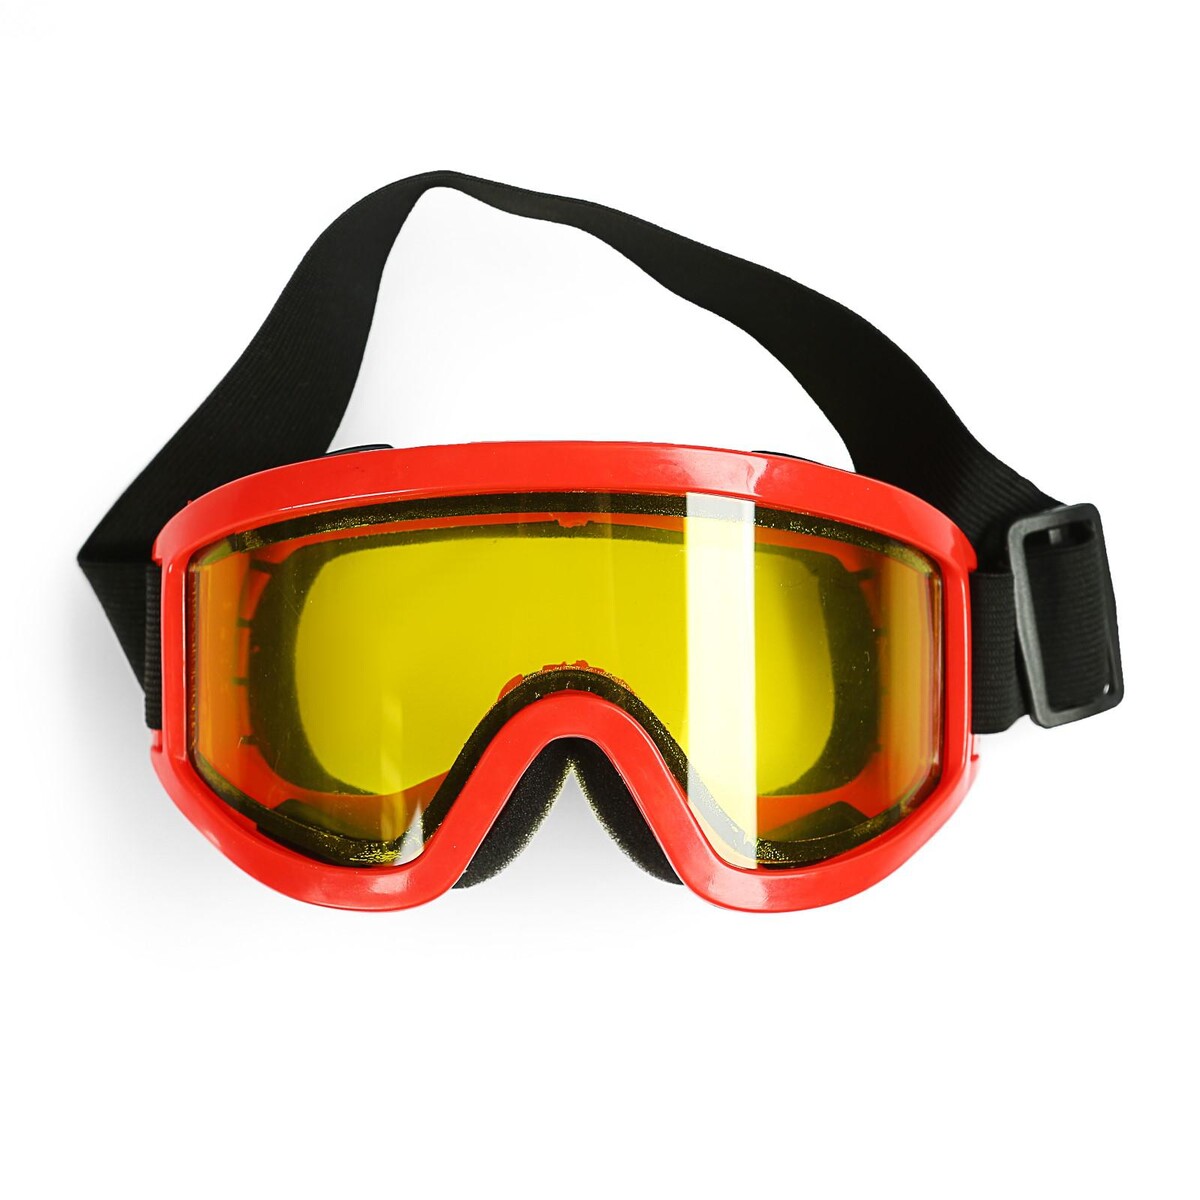 Очки-маска для езды на мототехнике, стекло двухслойное желтое, цвет красный маска для плавания salvas domino md mask ca140c1trsth красный